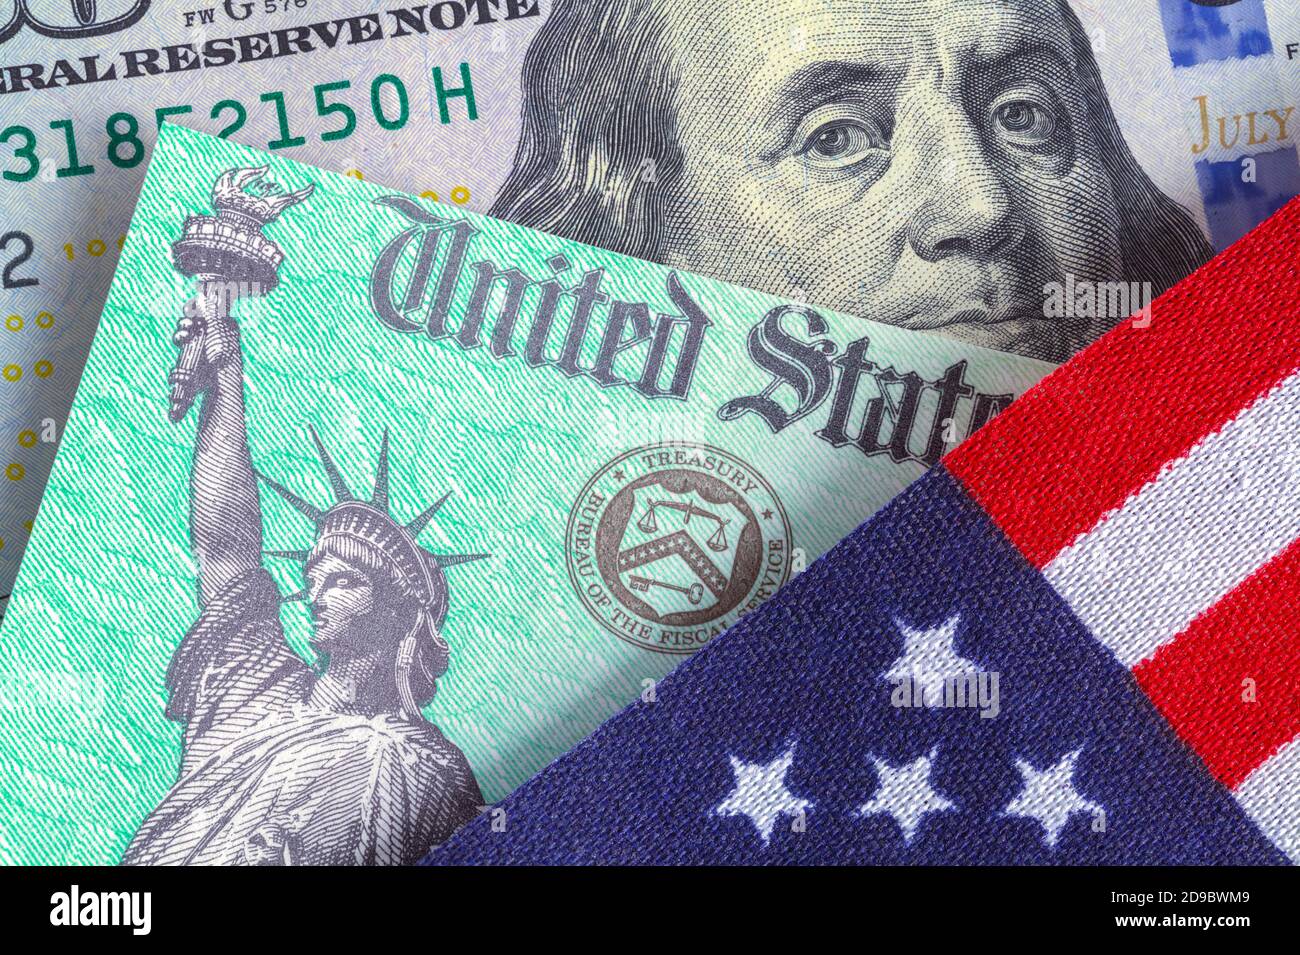 Unbanden Staaten Flagge mit Steuererklärung Scheck und hundert Dollar Rechnung. Stockfoto